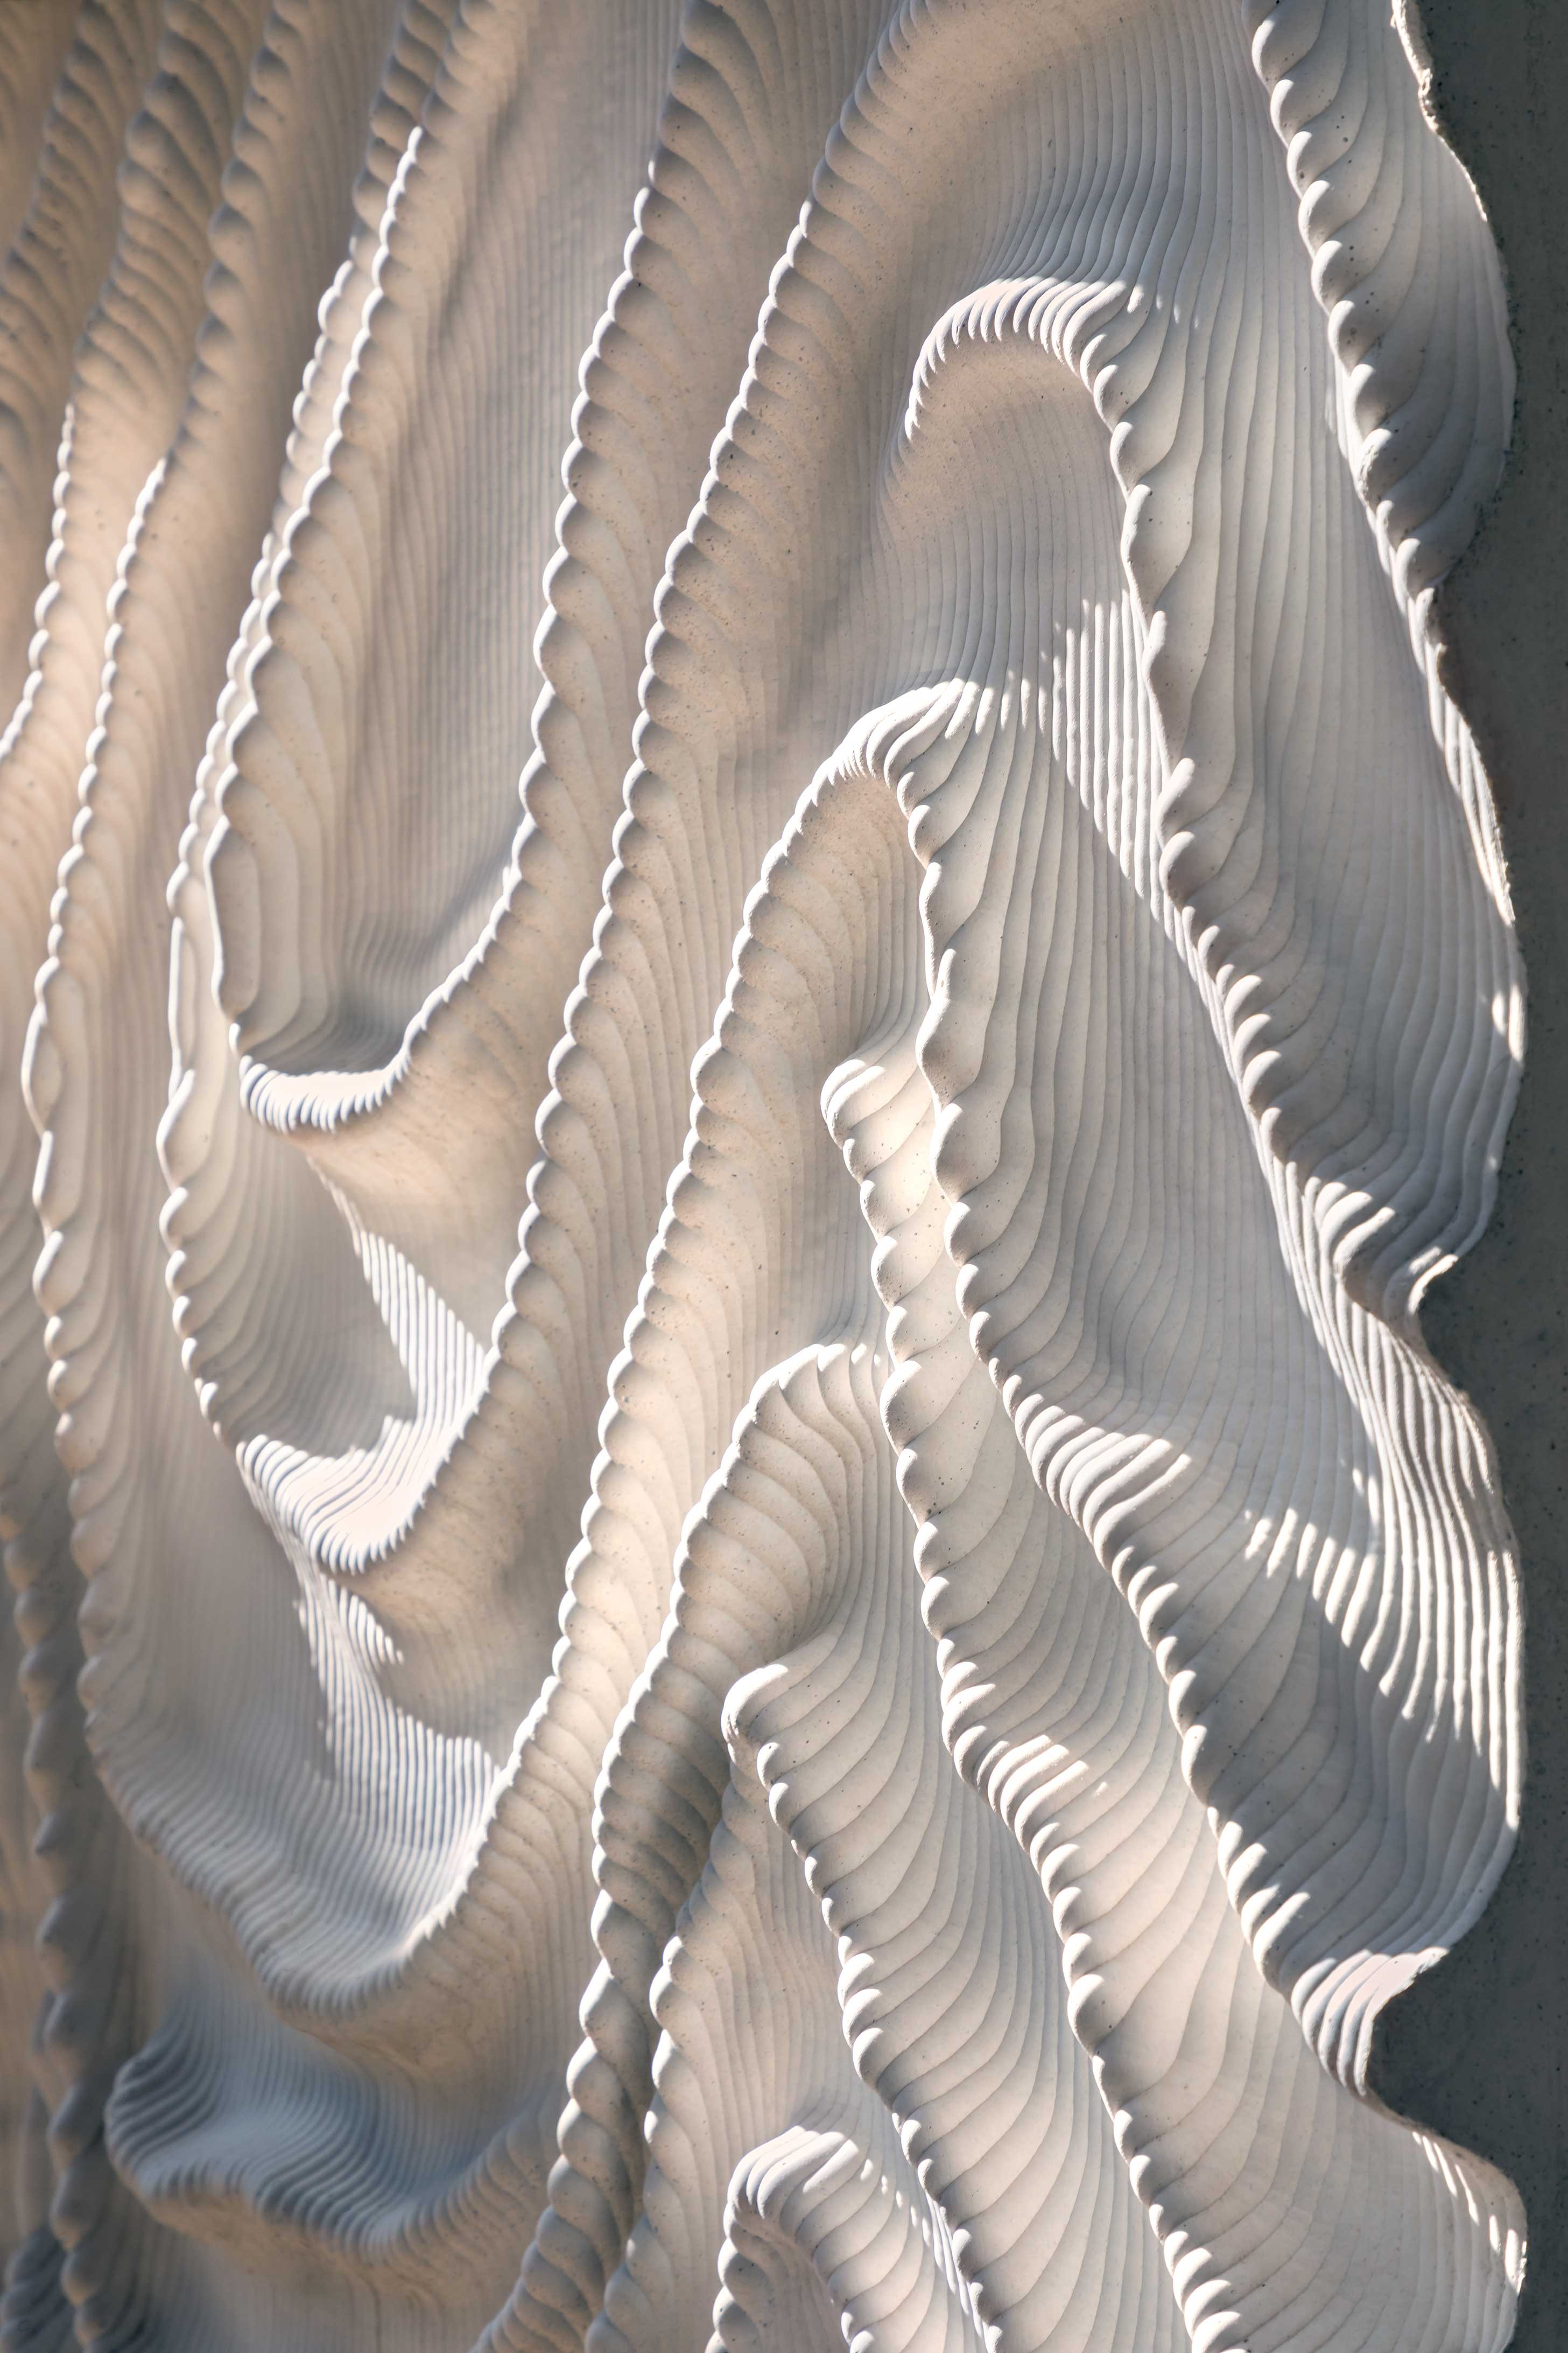 Iris van Herpen cria painel que imita textura de tecido para fachada de prédio (Foto: Scagliola Brakkee)